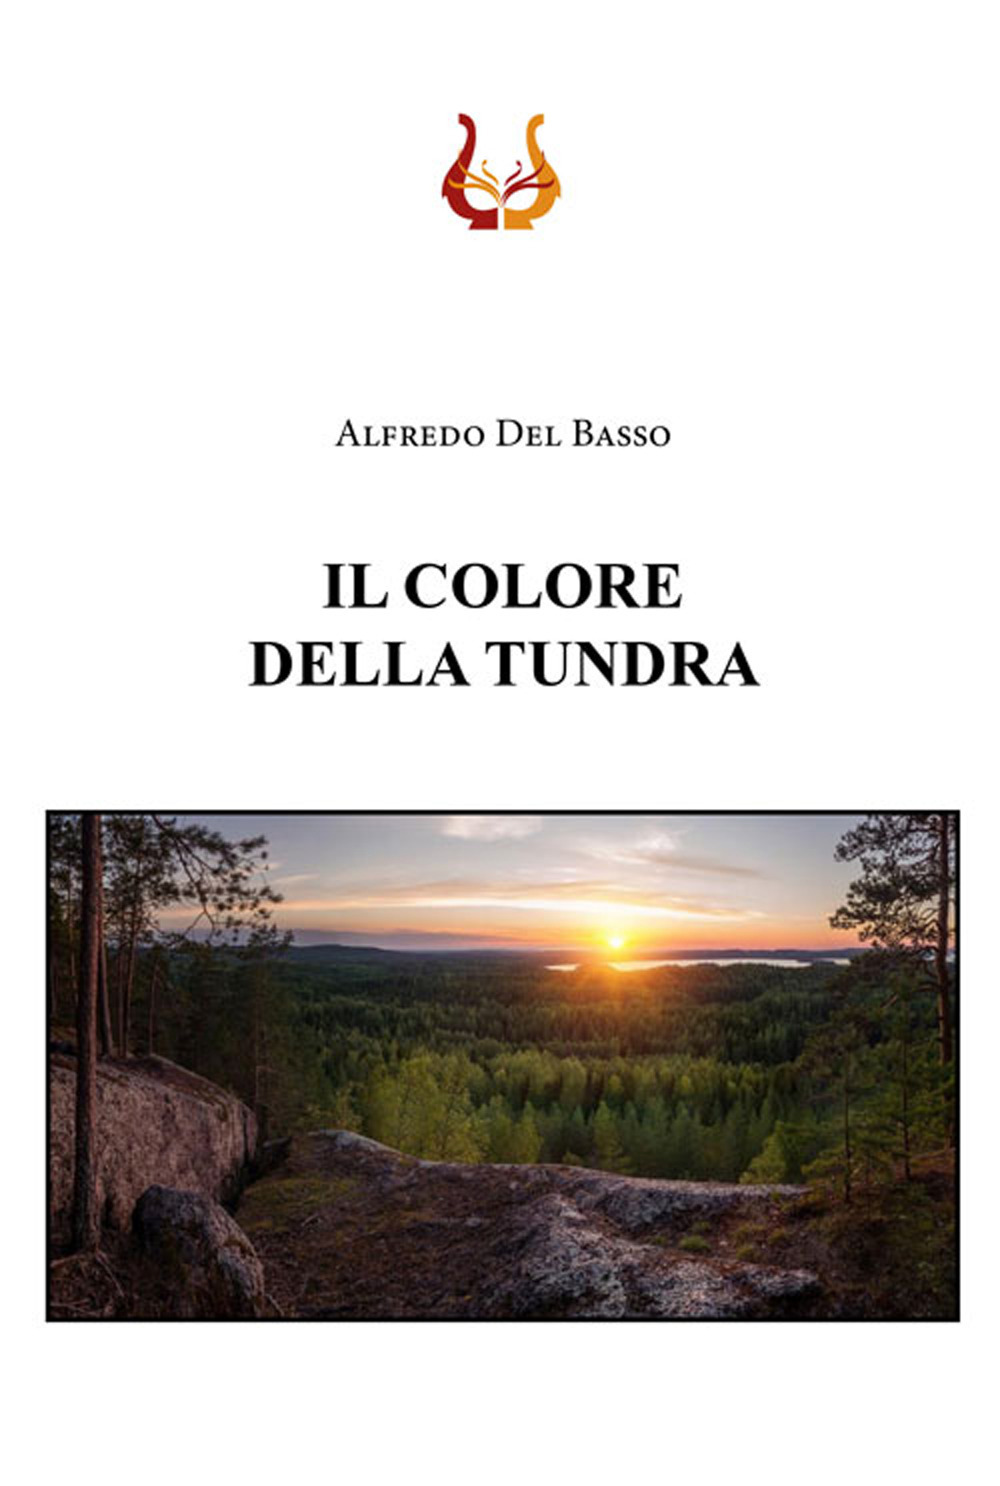 Libri Del Basso Alfredo - Il Colore Della Tundra NUOVO SIGILLATO, EDIZIONE DEL 25/05/2020 SUBITO DISPONIBILE